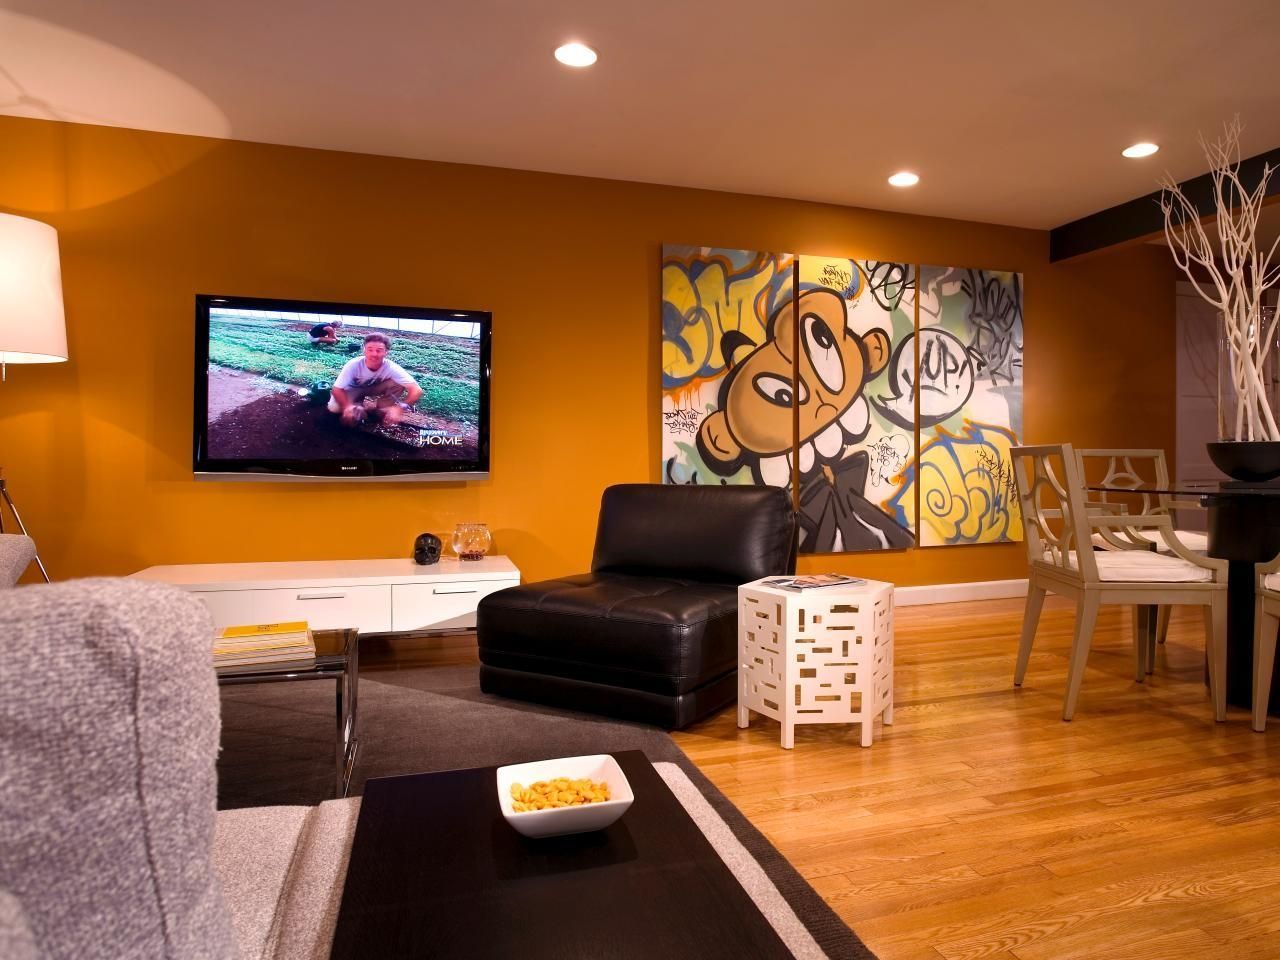 Wall Art For Bachelor Pad Living Room Inspirations With Best Pads For Wall Art For Bachelor Pad Living Room (Photo 4 of 20)